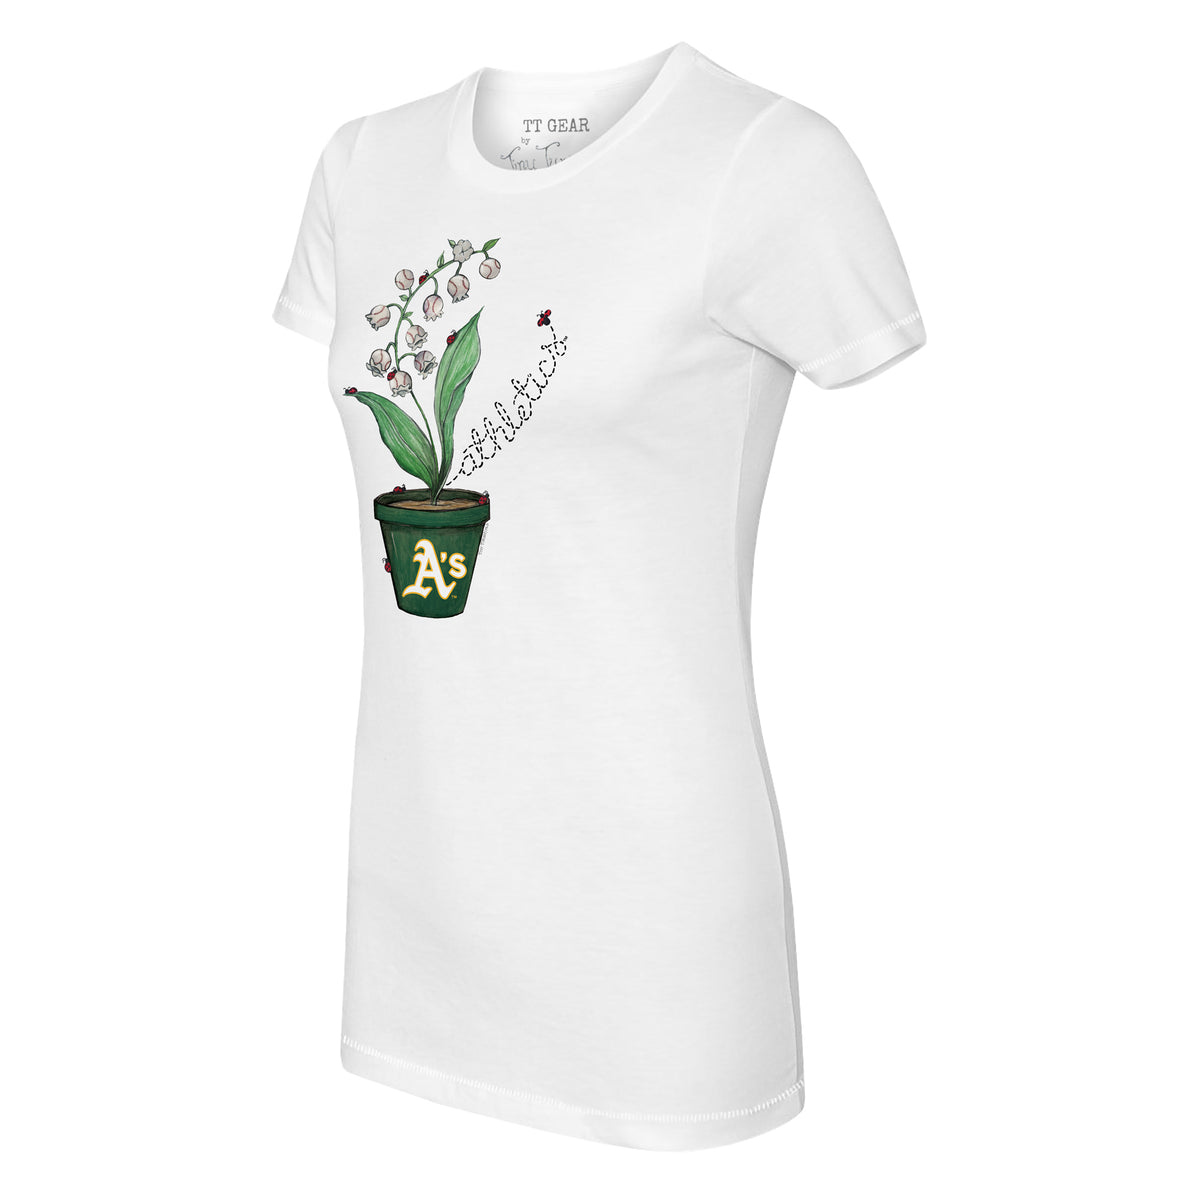 Oakland Athletics Ladybug Tee Shirt